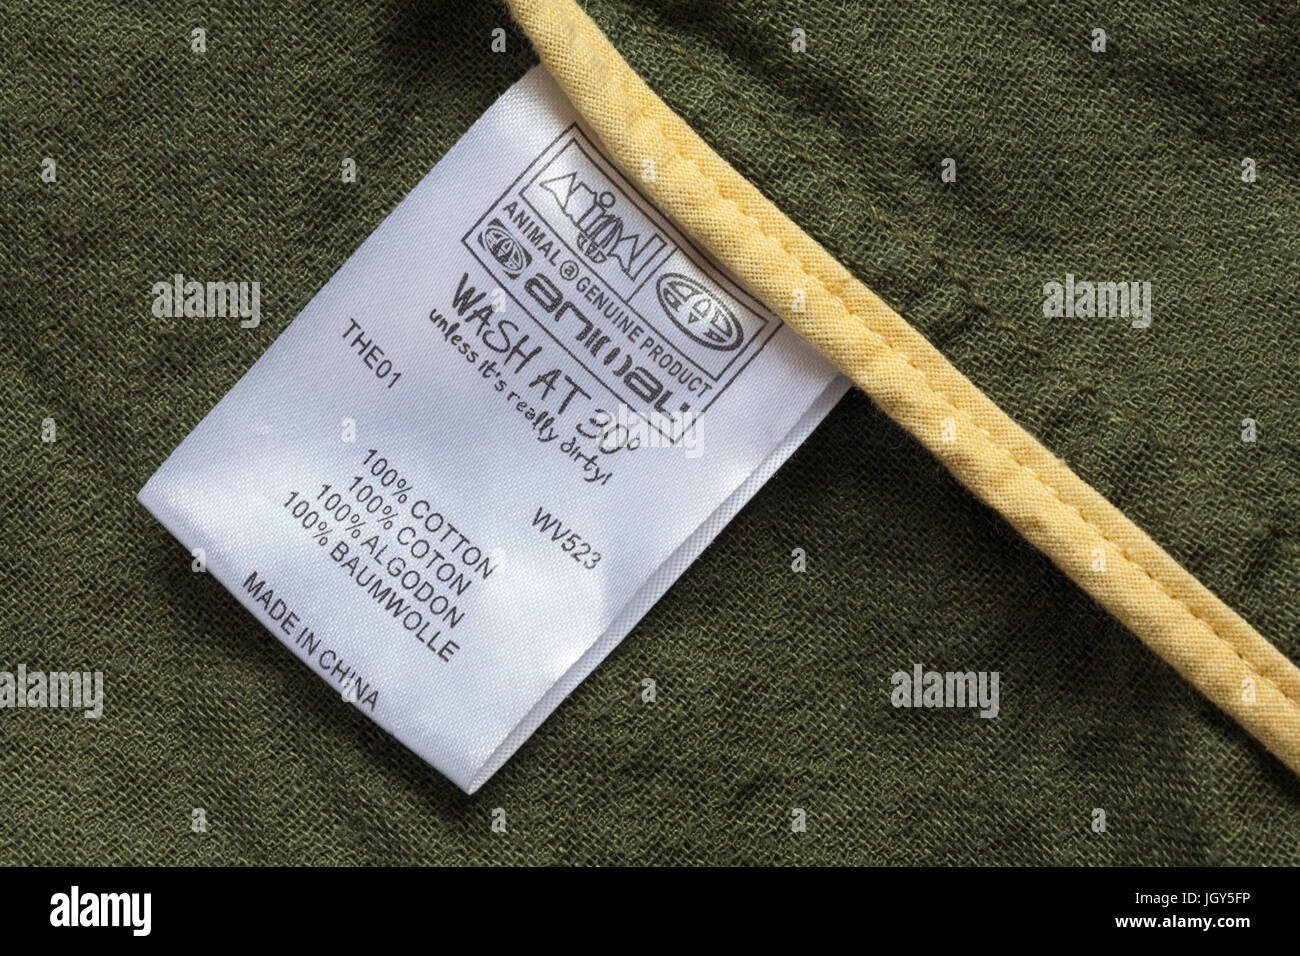 Label in der Kleidung - bei 30 Grad waschen, es sei denn seine wirklich  schmutzig 100% Baumwolle Made in China - im UK Vereinigtes Königreich,  Großbritannien verkauft Stockfotografie - Alamy